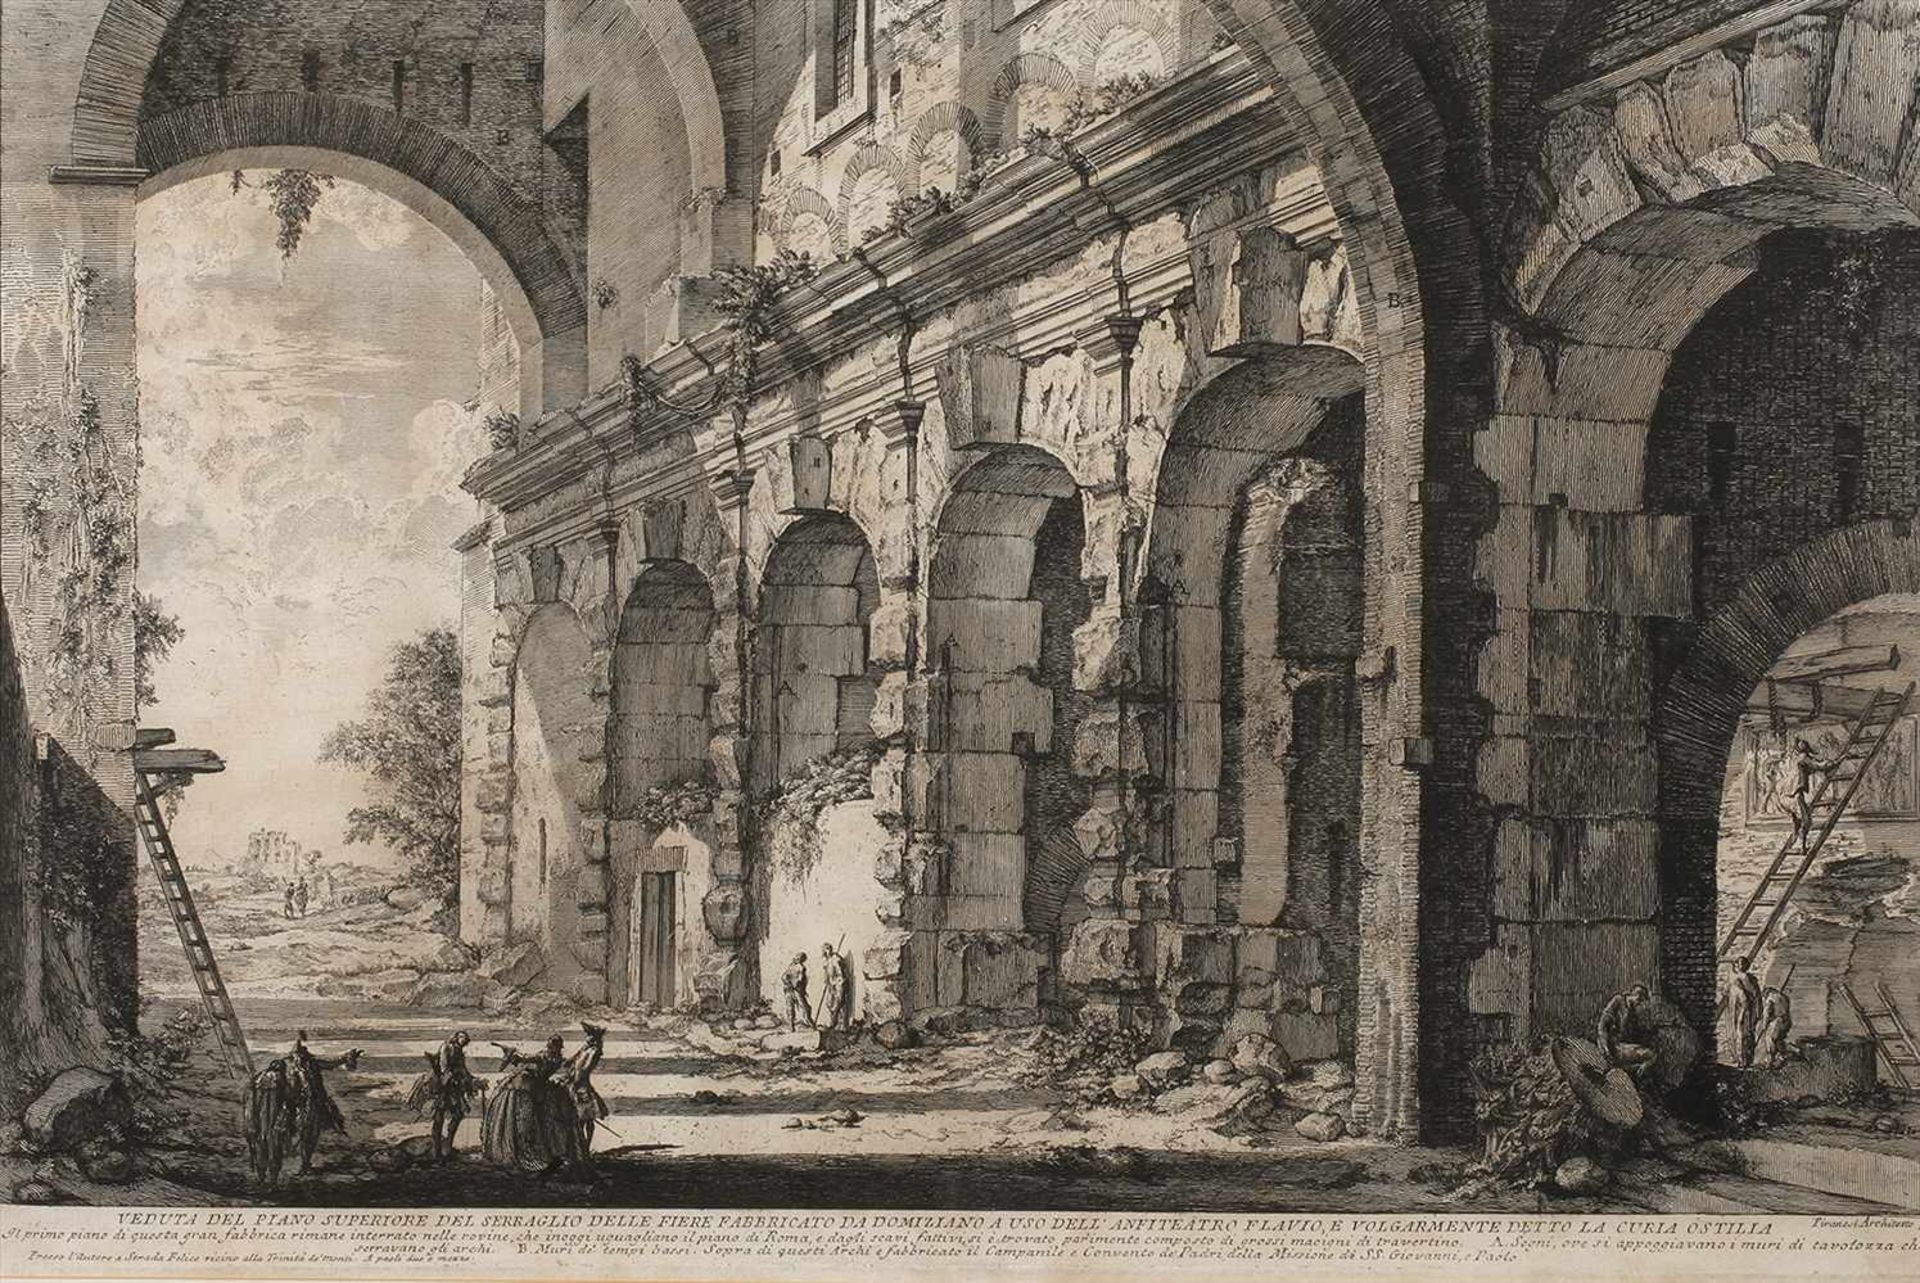 Giovanni Bat. Piranesi, "Veduta Piano Superiore"Blick in einen teils verfallenen hohen Gewölberaum